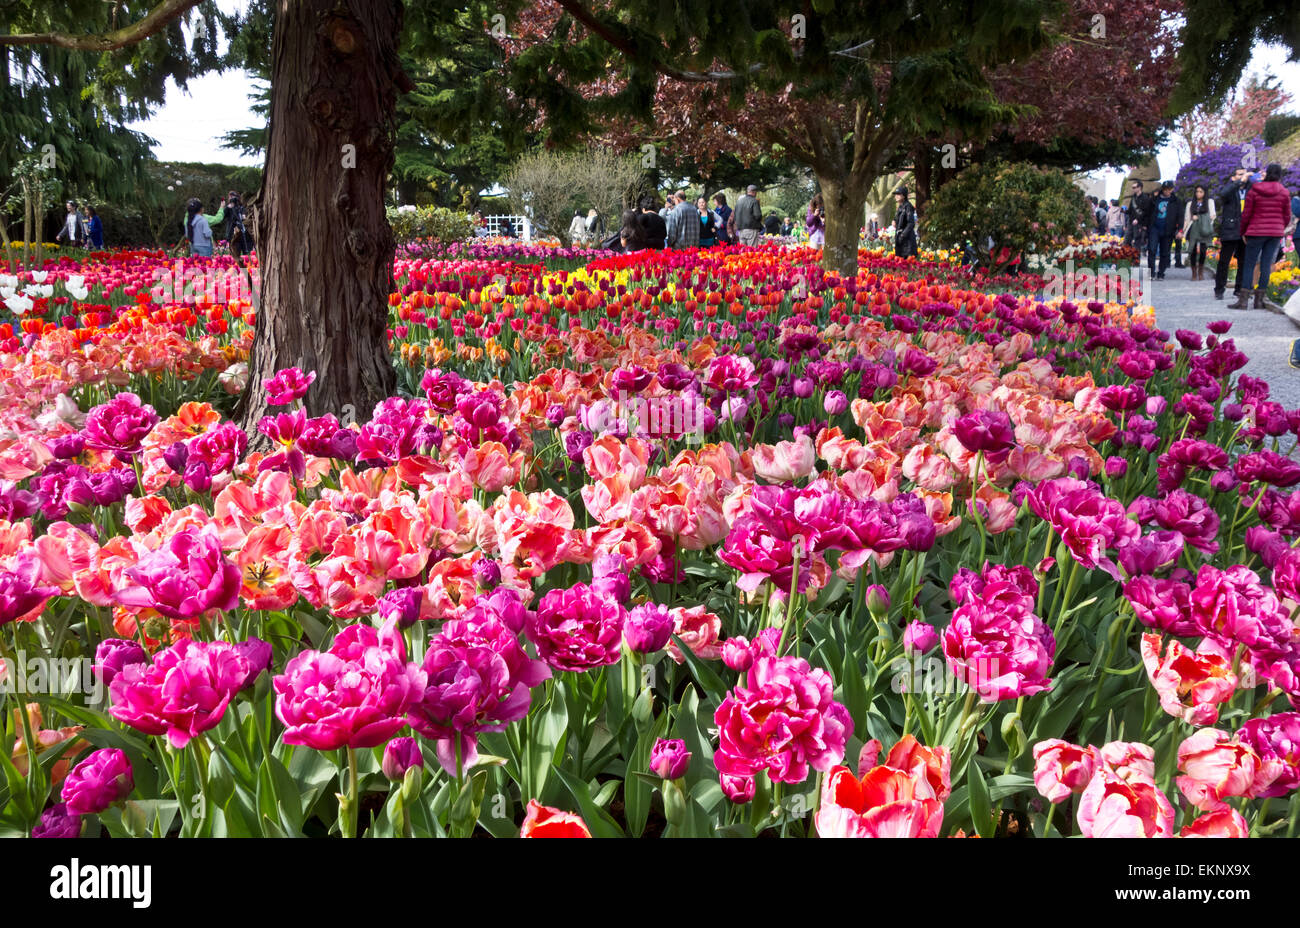 Besucher Tulpen in Roozengaarde anzeigen Gärten in Mount Vernon, Washington, während das Skagit Valley Tulpenfest. Stockfoto